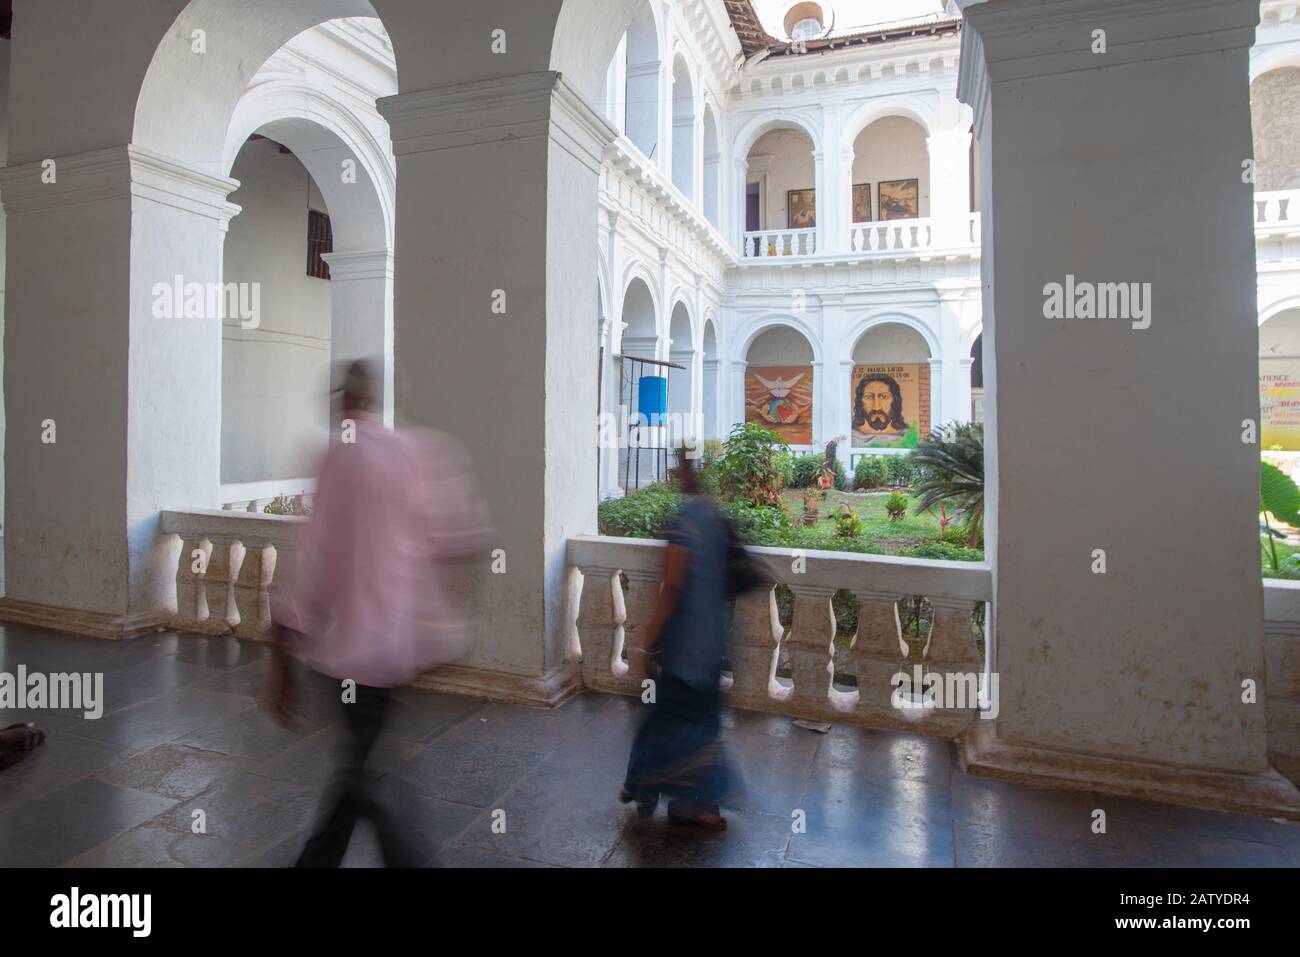 Old Goa, Indien - 26. Februar 2018: Innenansicht des Kreuzgangs der Bom-Jesus-Basilika mit zwei nicht erkennbaren Besuchern Stockfoto